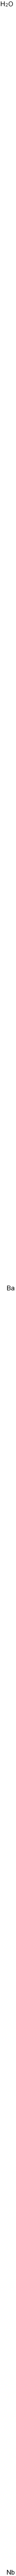 ニオブ酸バリウム